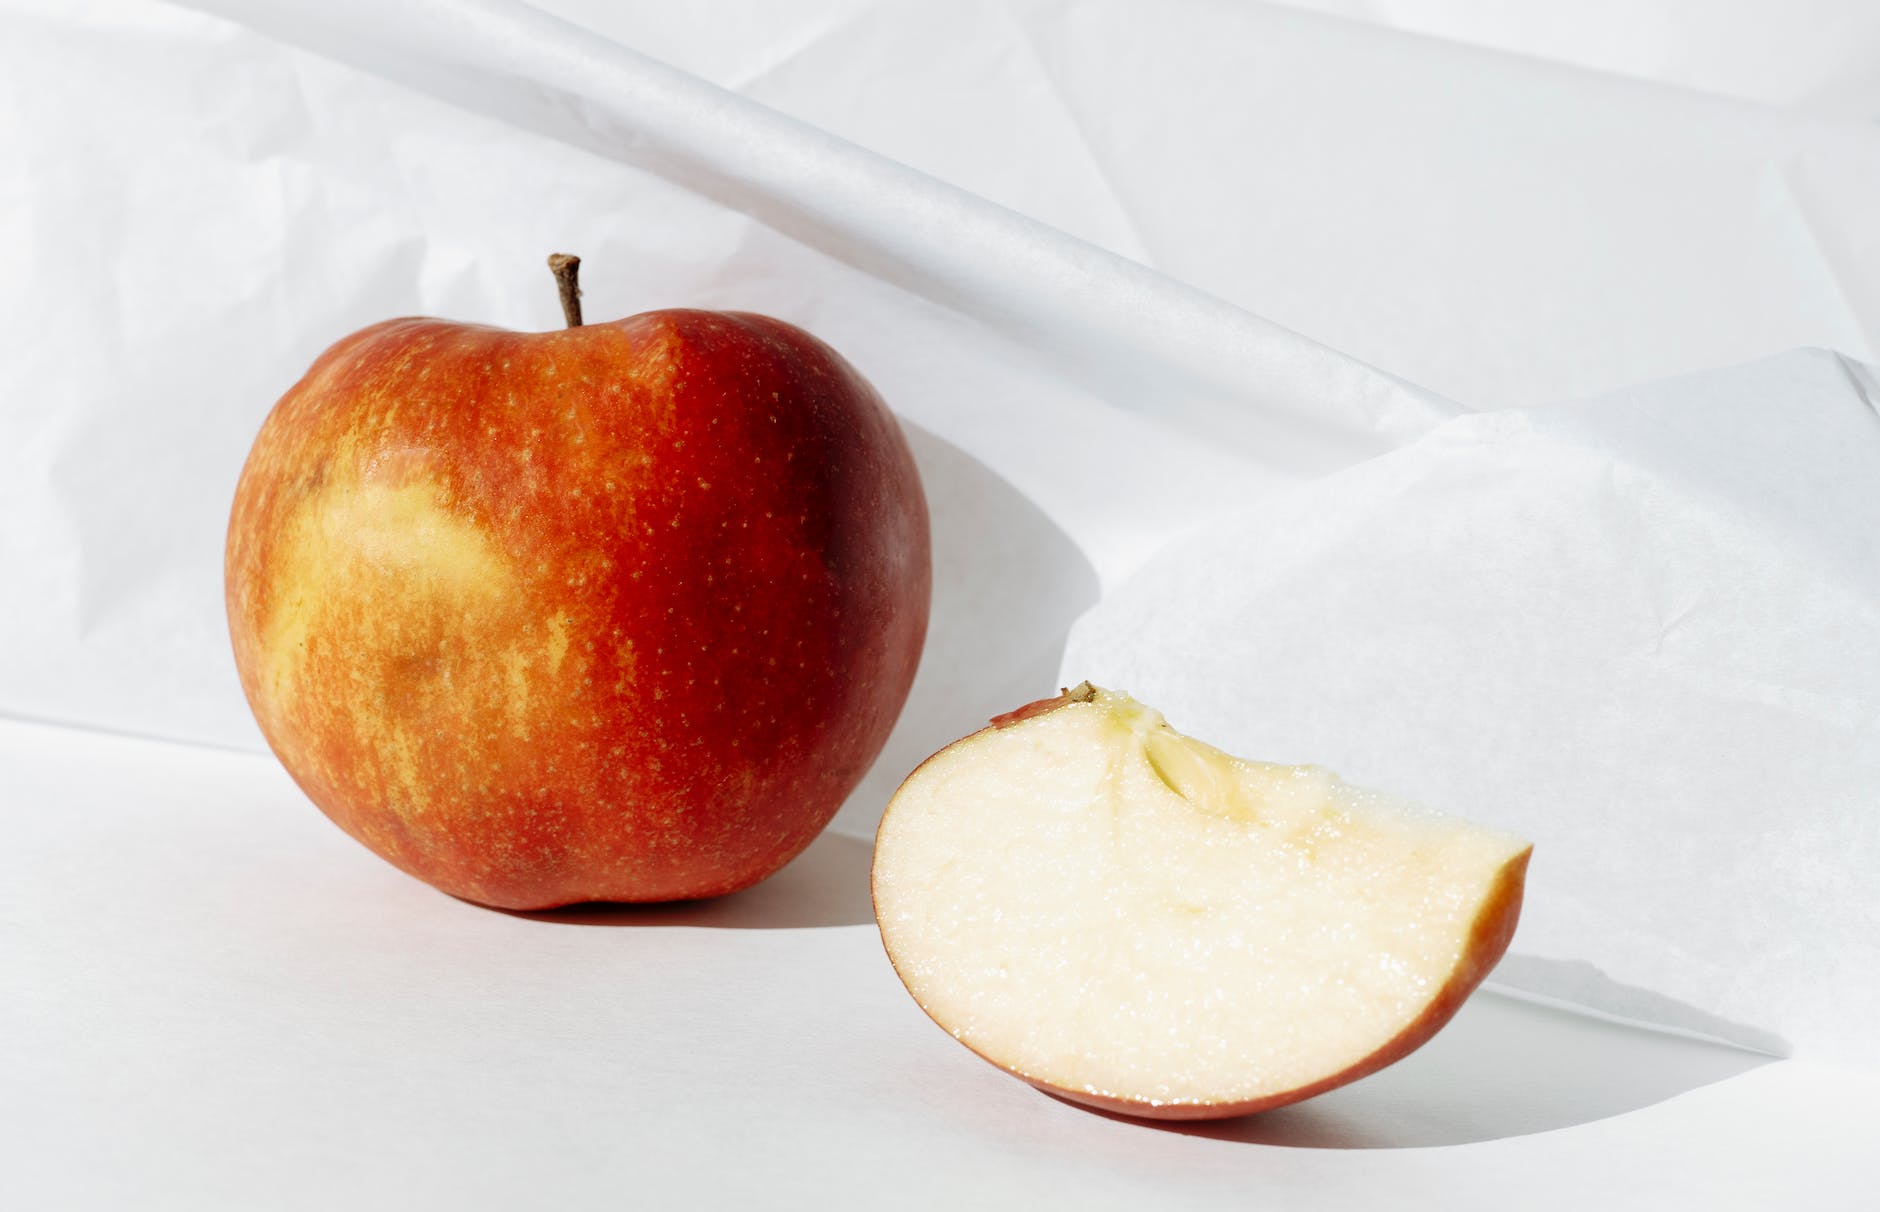 सेब खाने से पहले जाने सेब की तासीर कैसी होती है ?